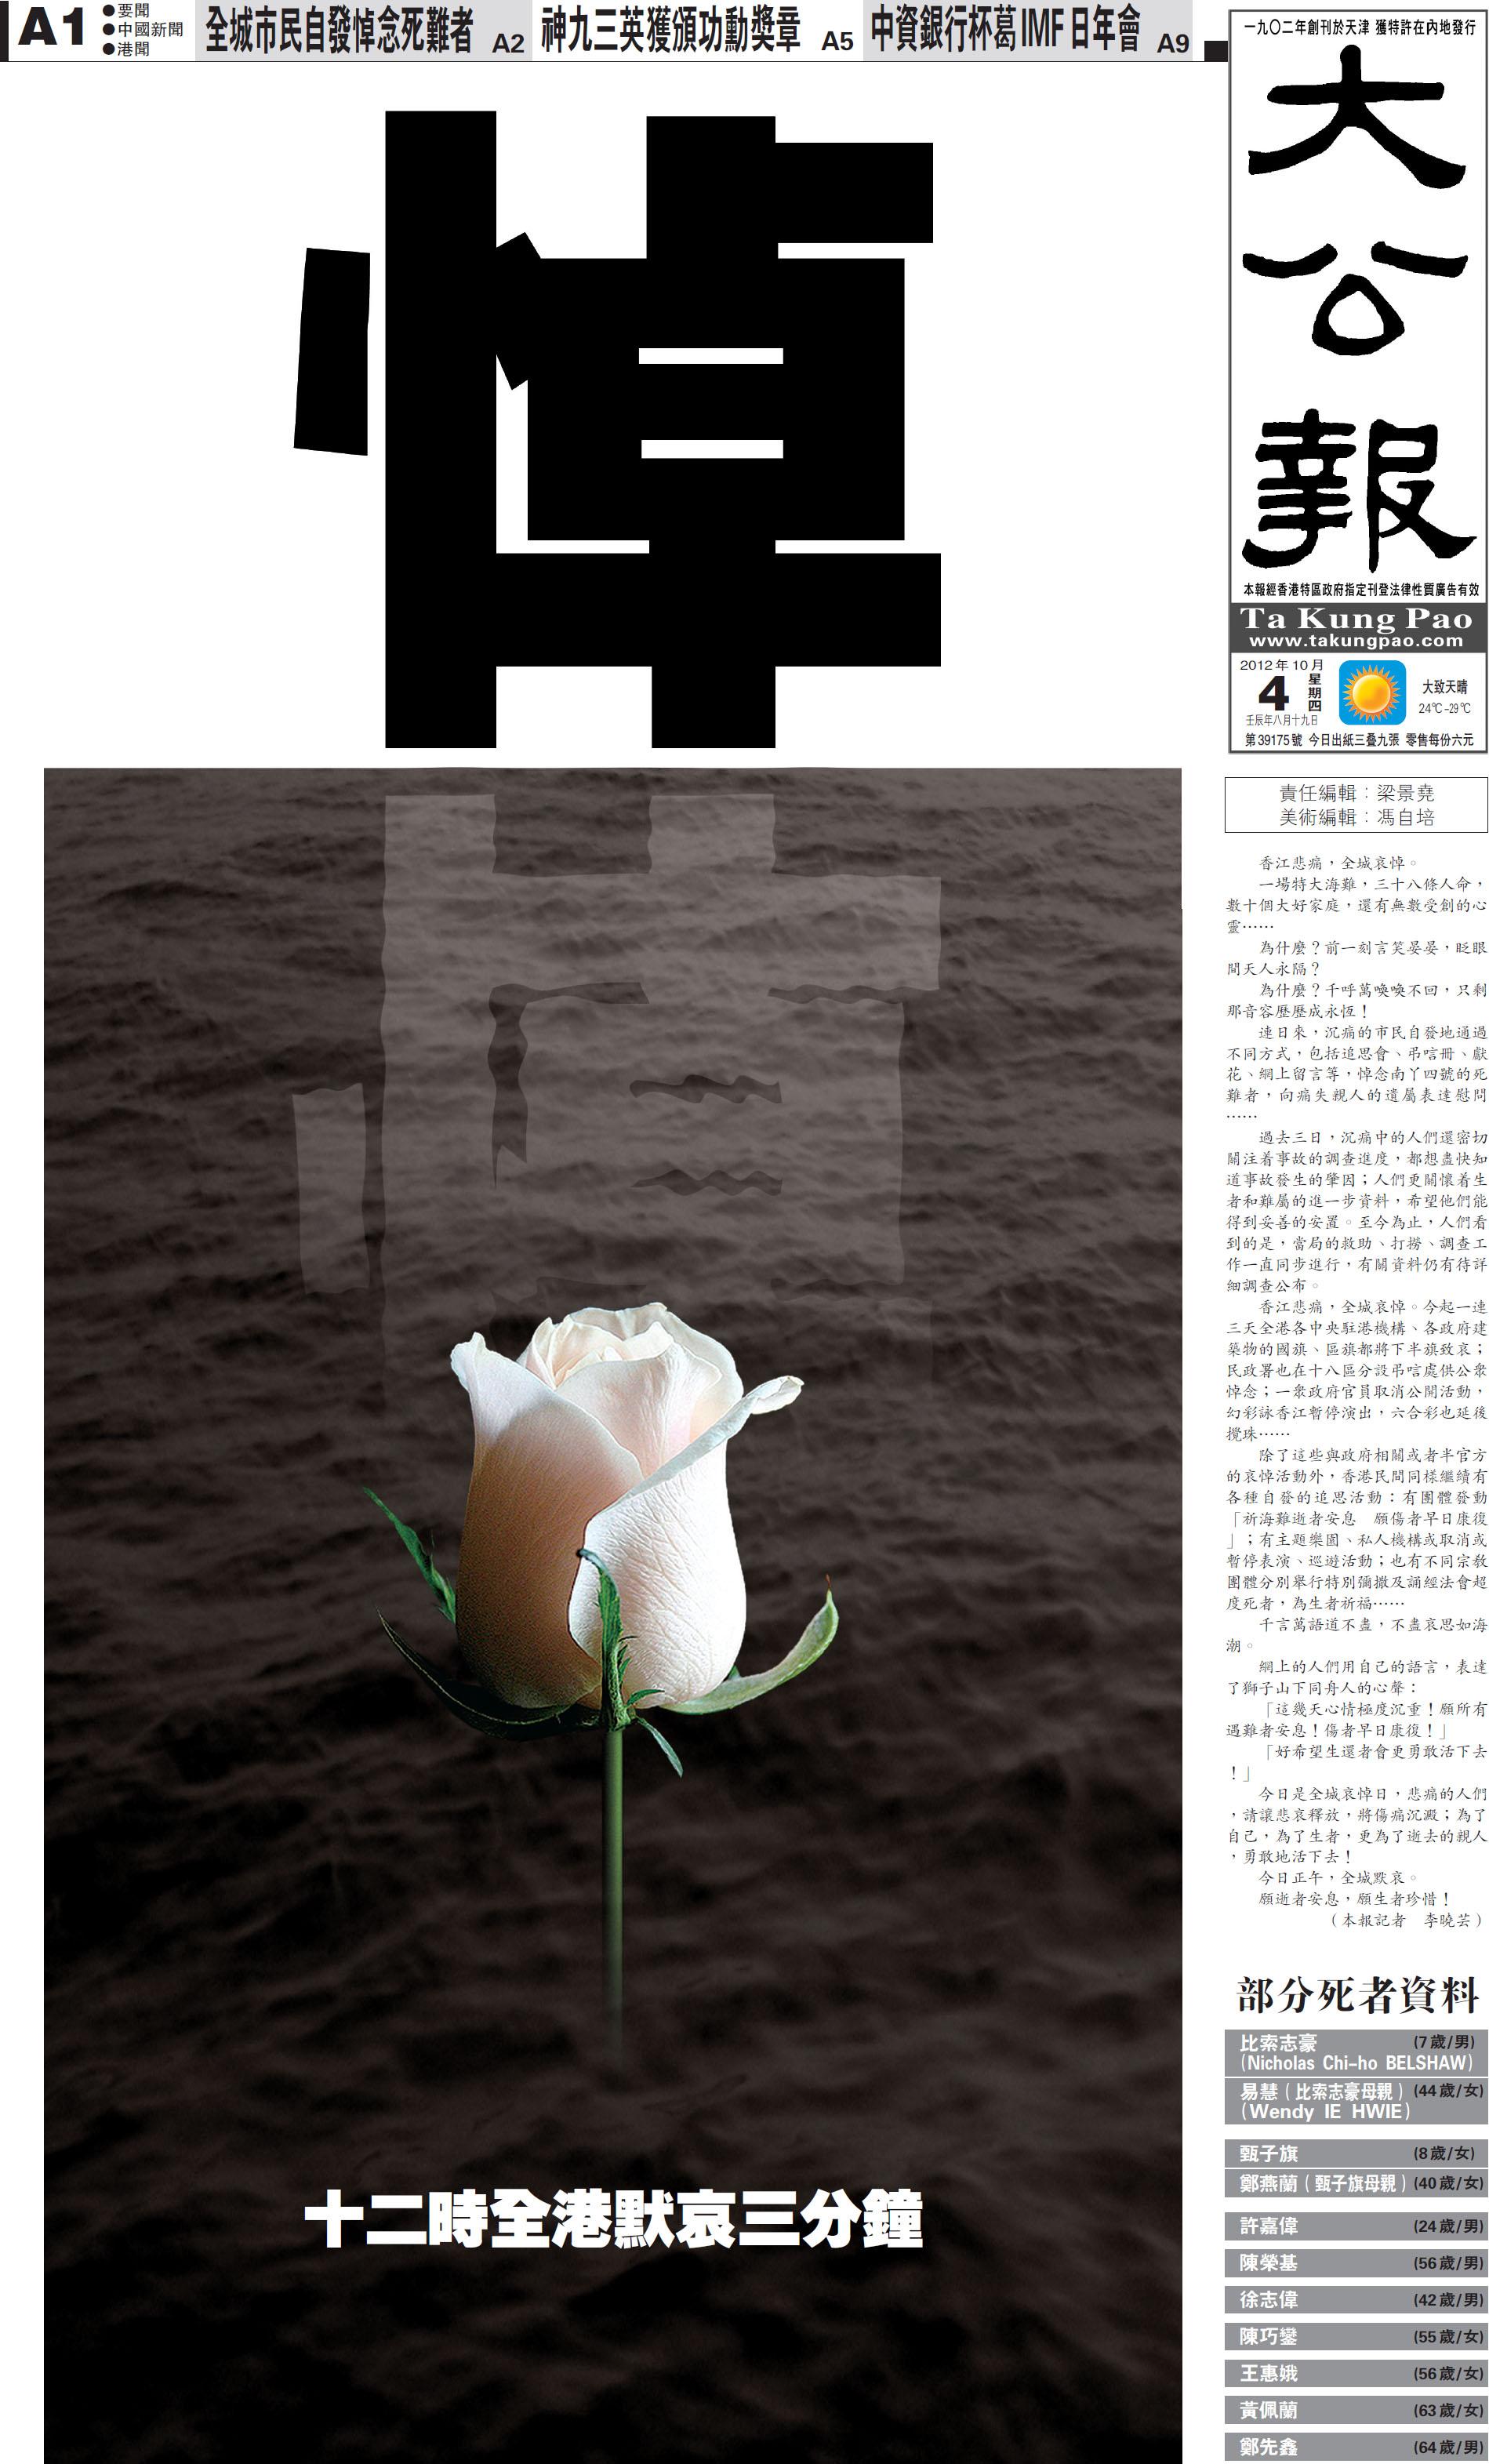 香港今起下半旗悼念撞船遇难者 12时默哀3分钟